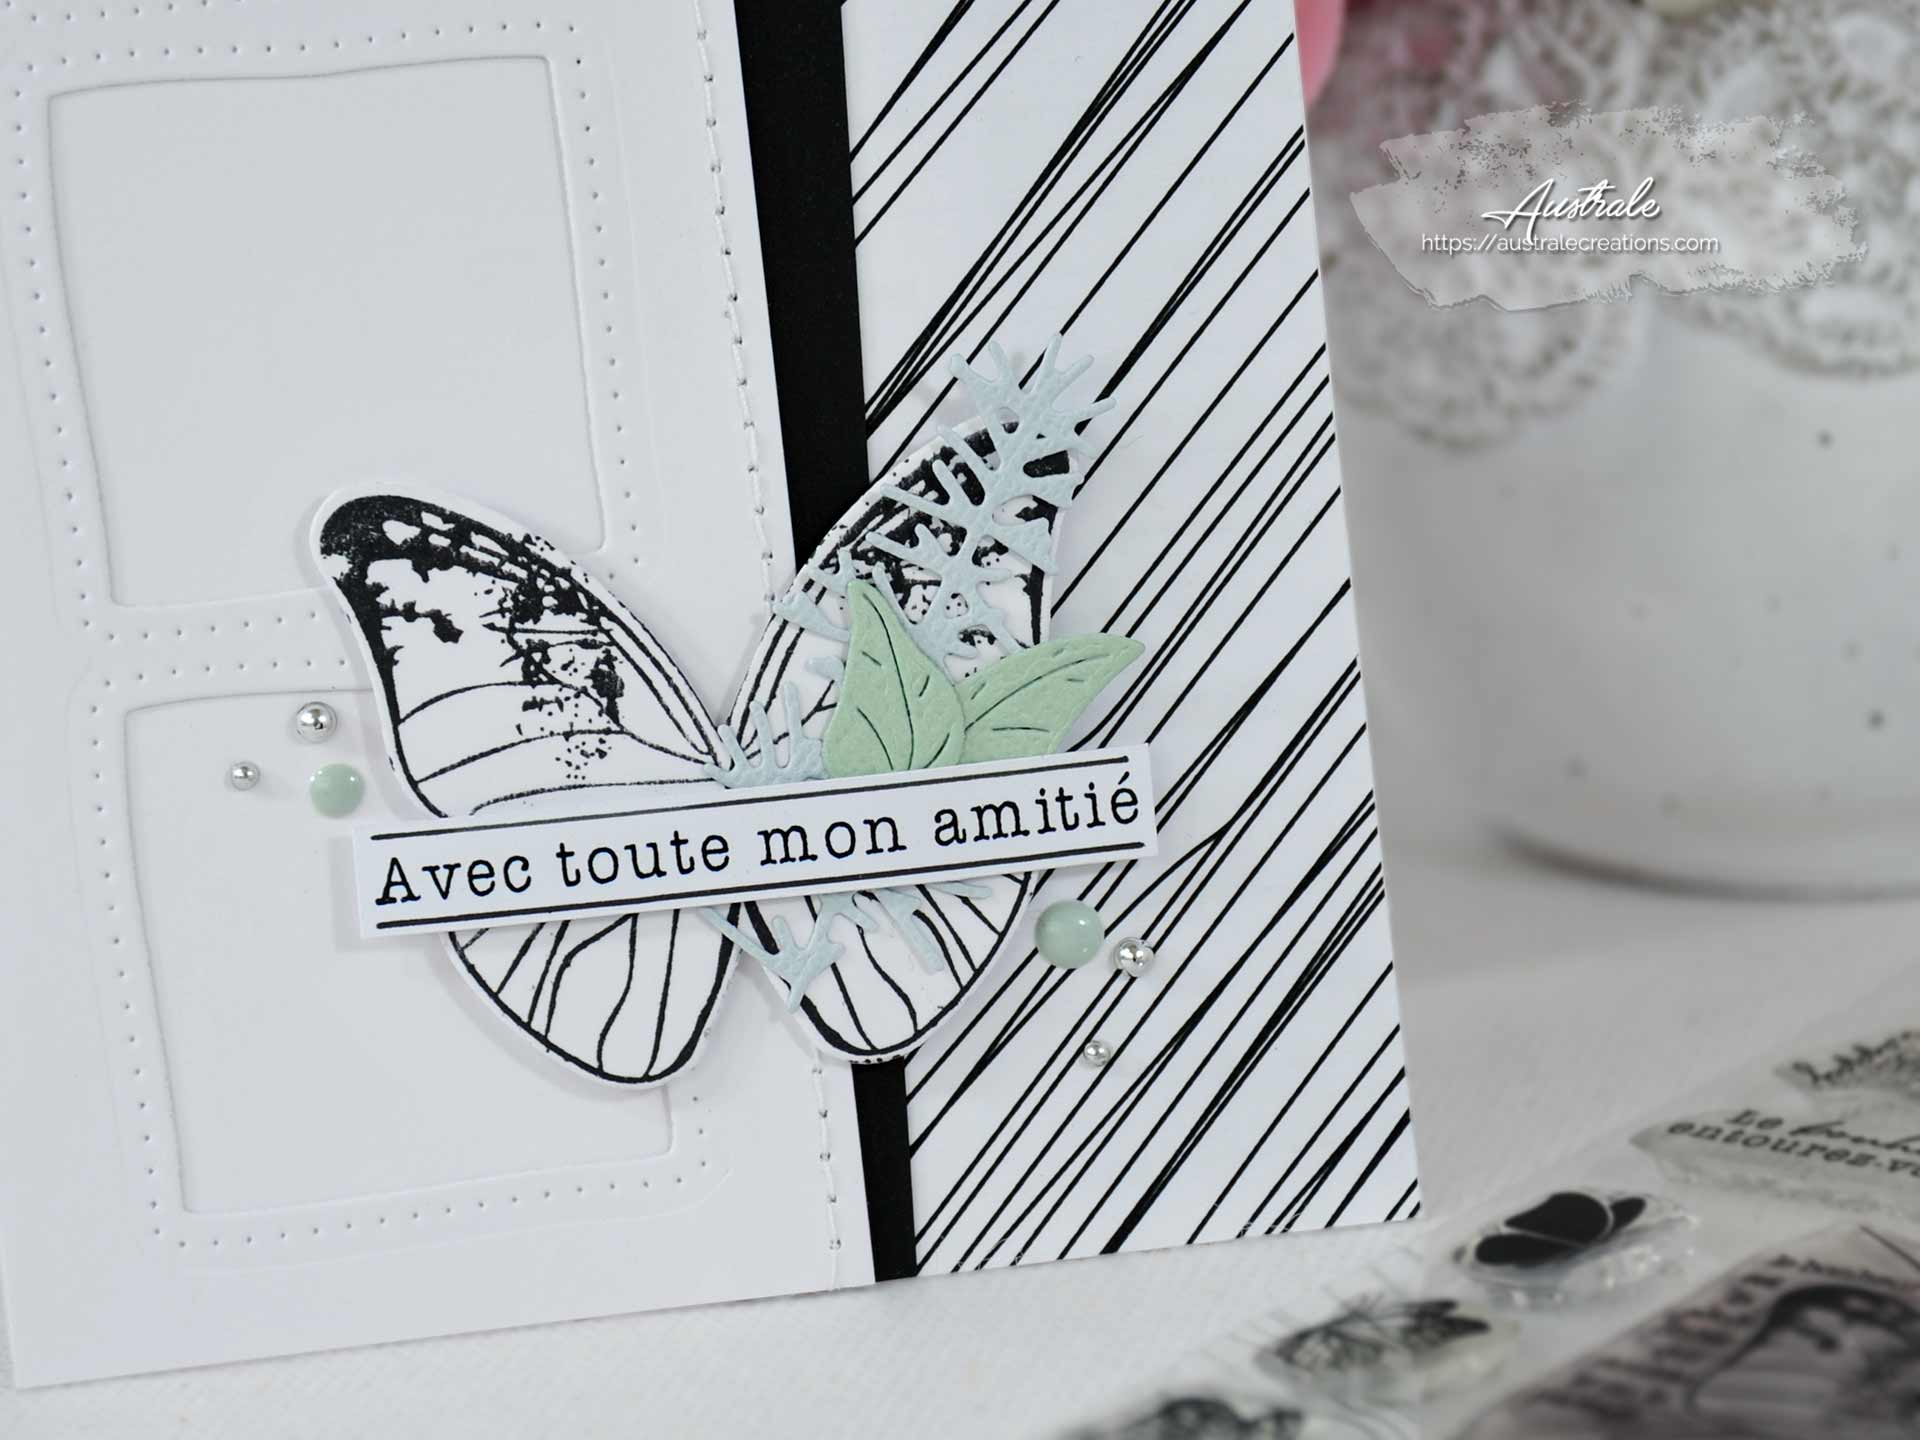 Création d'une carte d'amitié en noir et tons pastels avec feuillages et papillon.